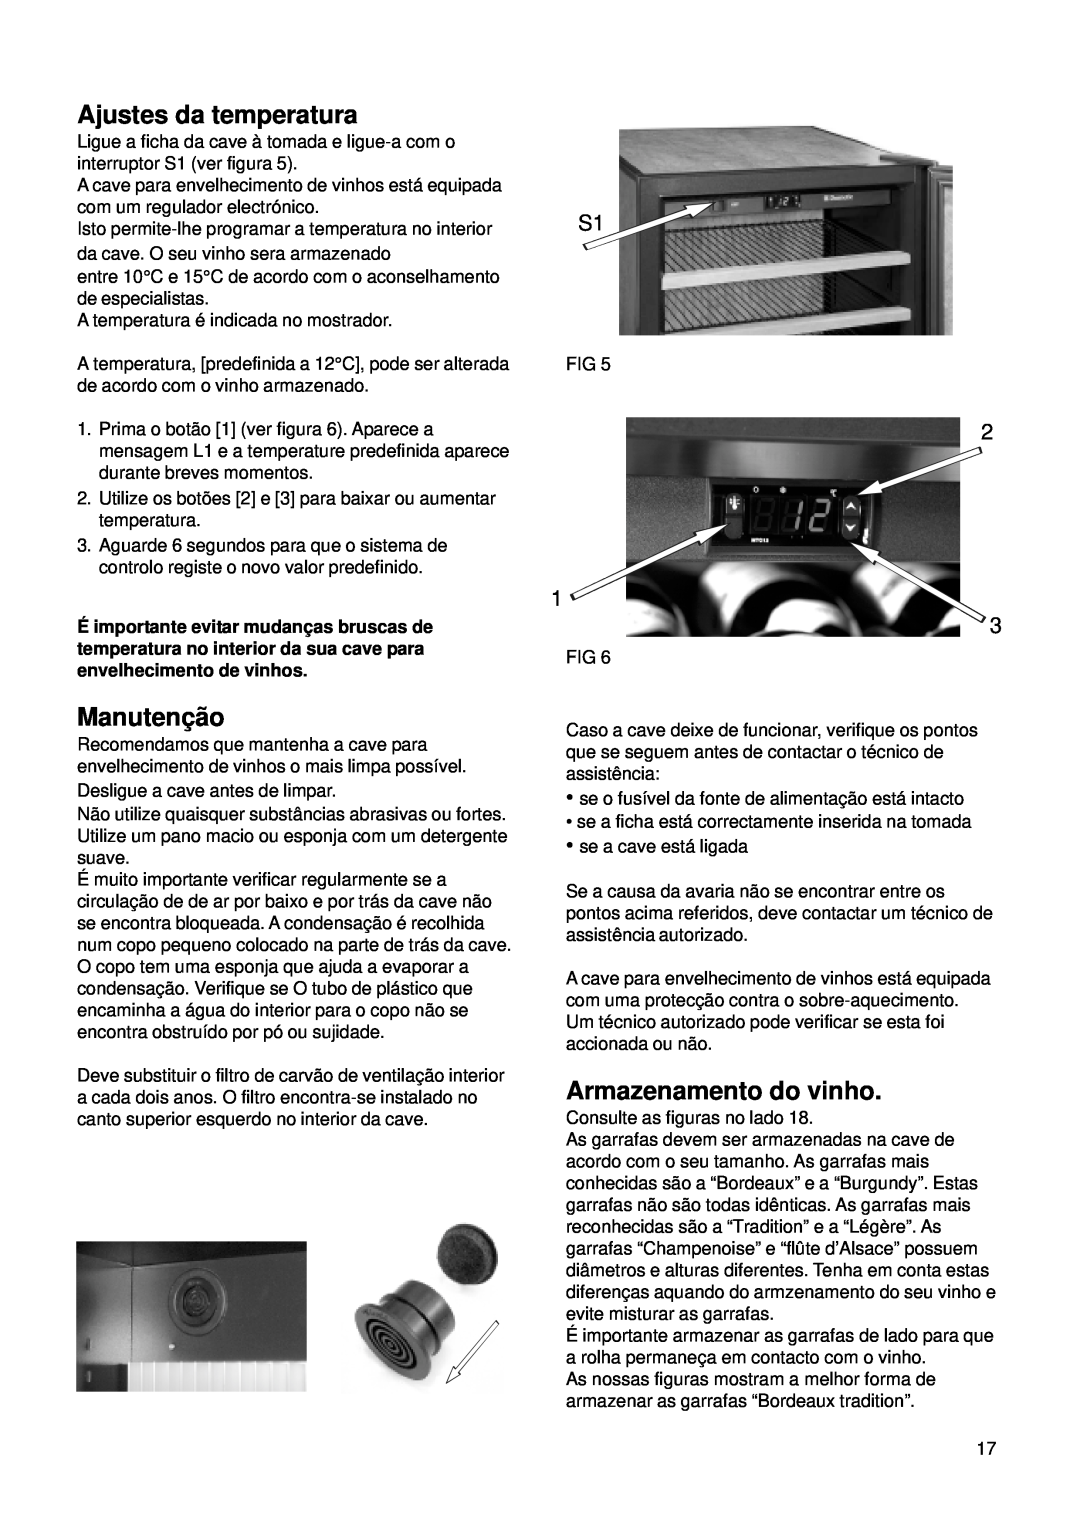 Dometic CS 52 instruction manual Ajustes da temperatura, Manutençã o, Armazenamento do vinho 